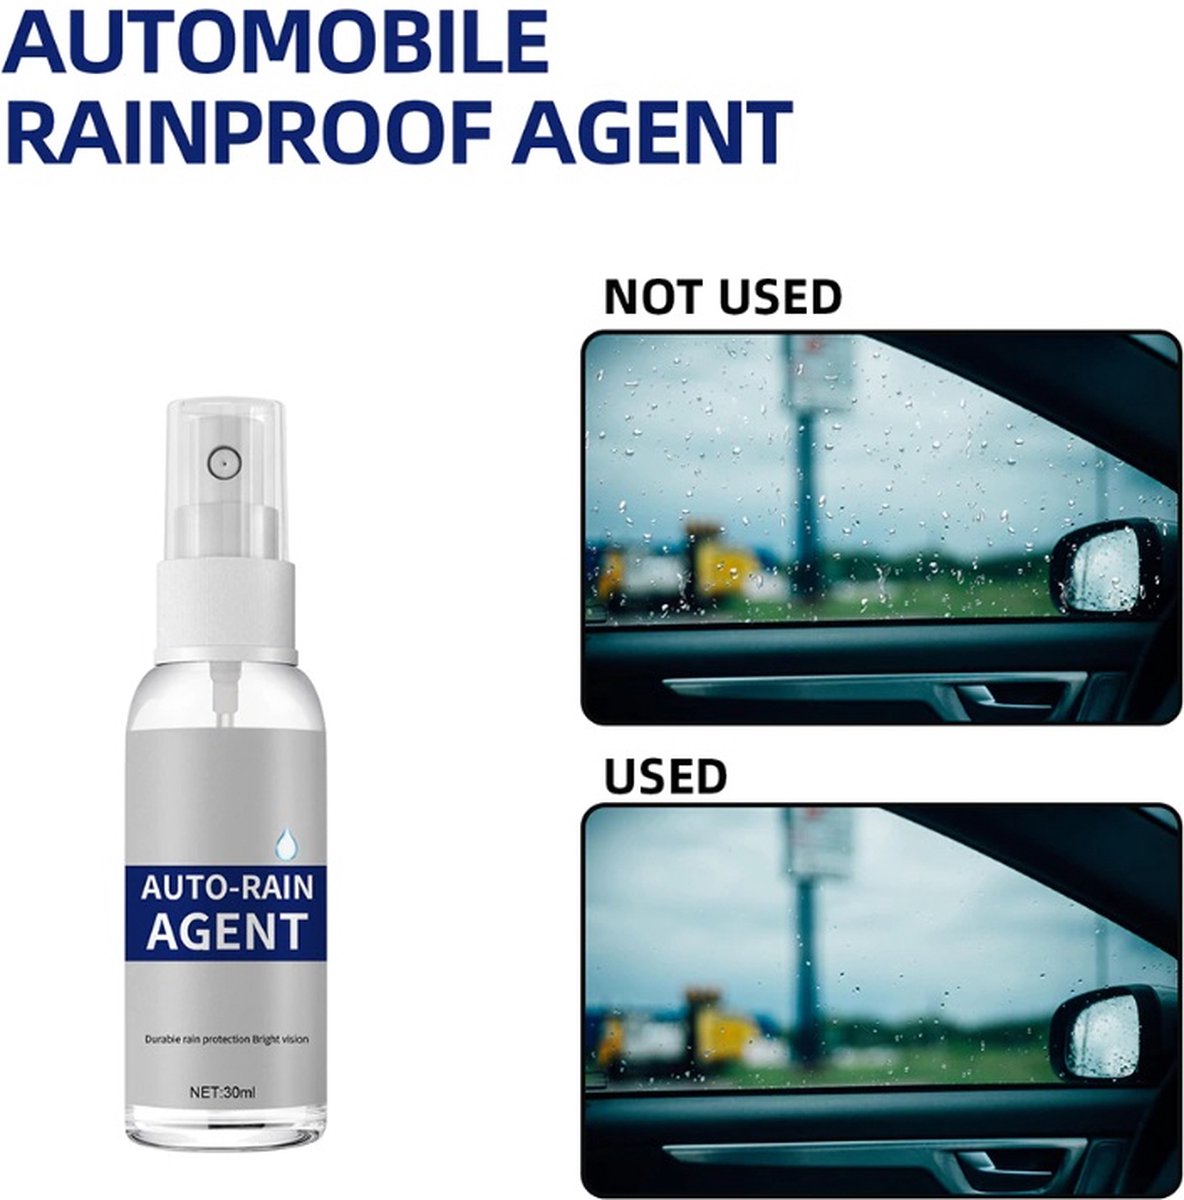 TLVX Anti condens spray 30ML / Voorkom beslagen Auto ruit / voorruit / ramen / spiegels / achteruit vocht vrij maken / Rain Agent / Ruit coating / Anti Fog / Vocht ramen voorkomen / Veilig zicht / Snel en effectief!